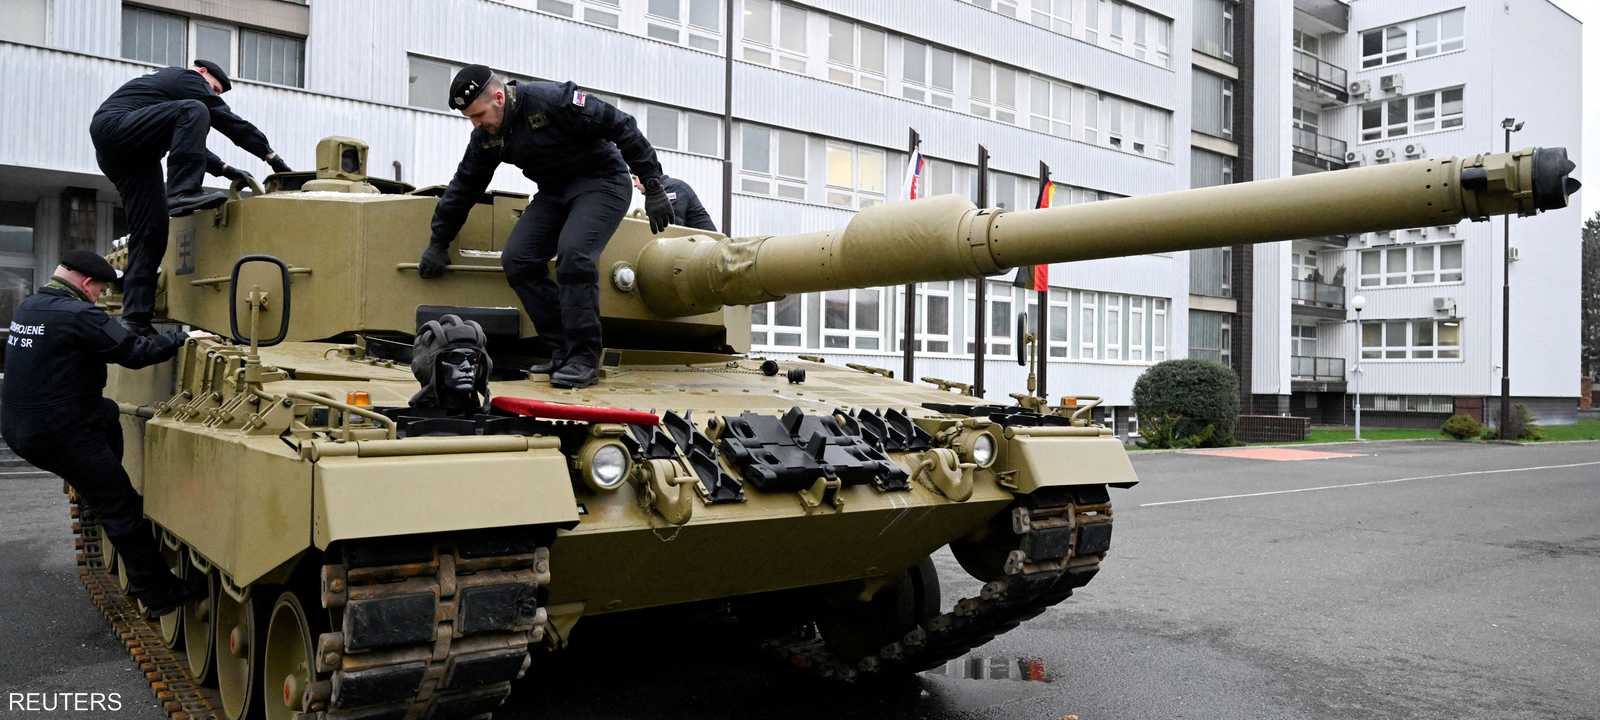 كييف تأمل أن تحل أزمة الدبابات الألمانية قريبا